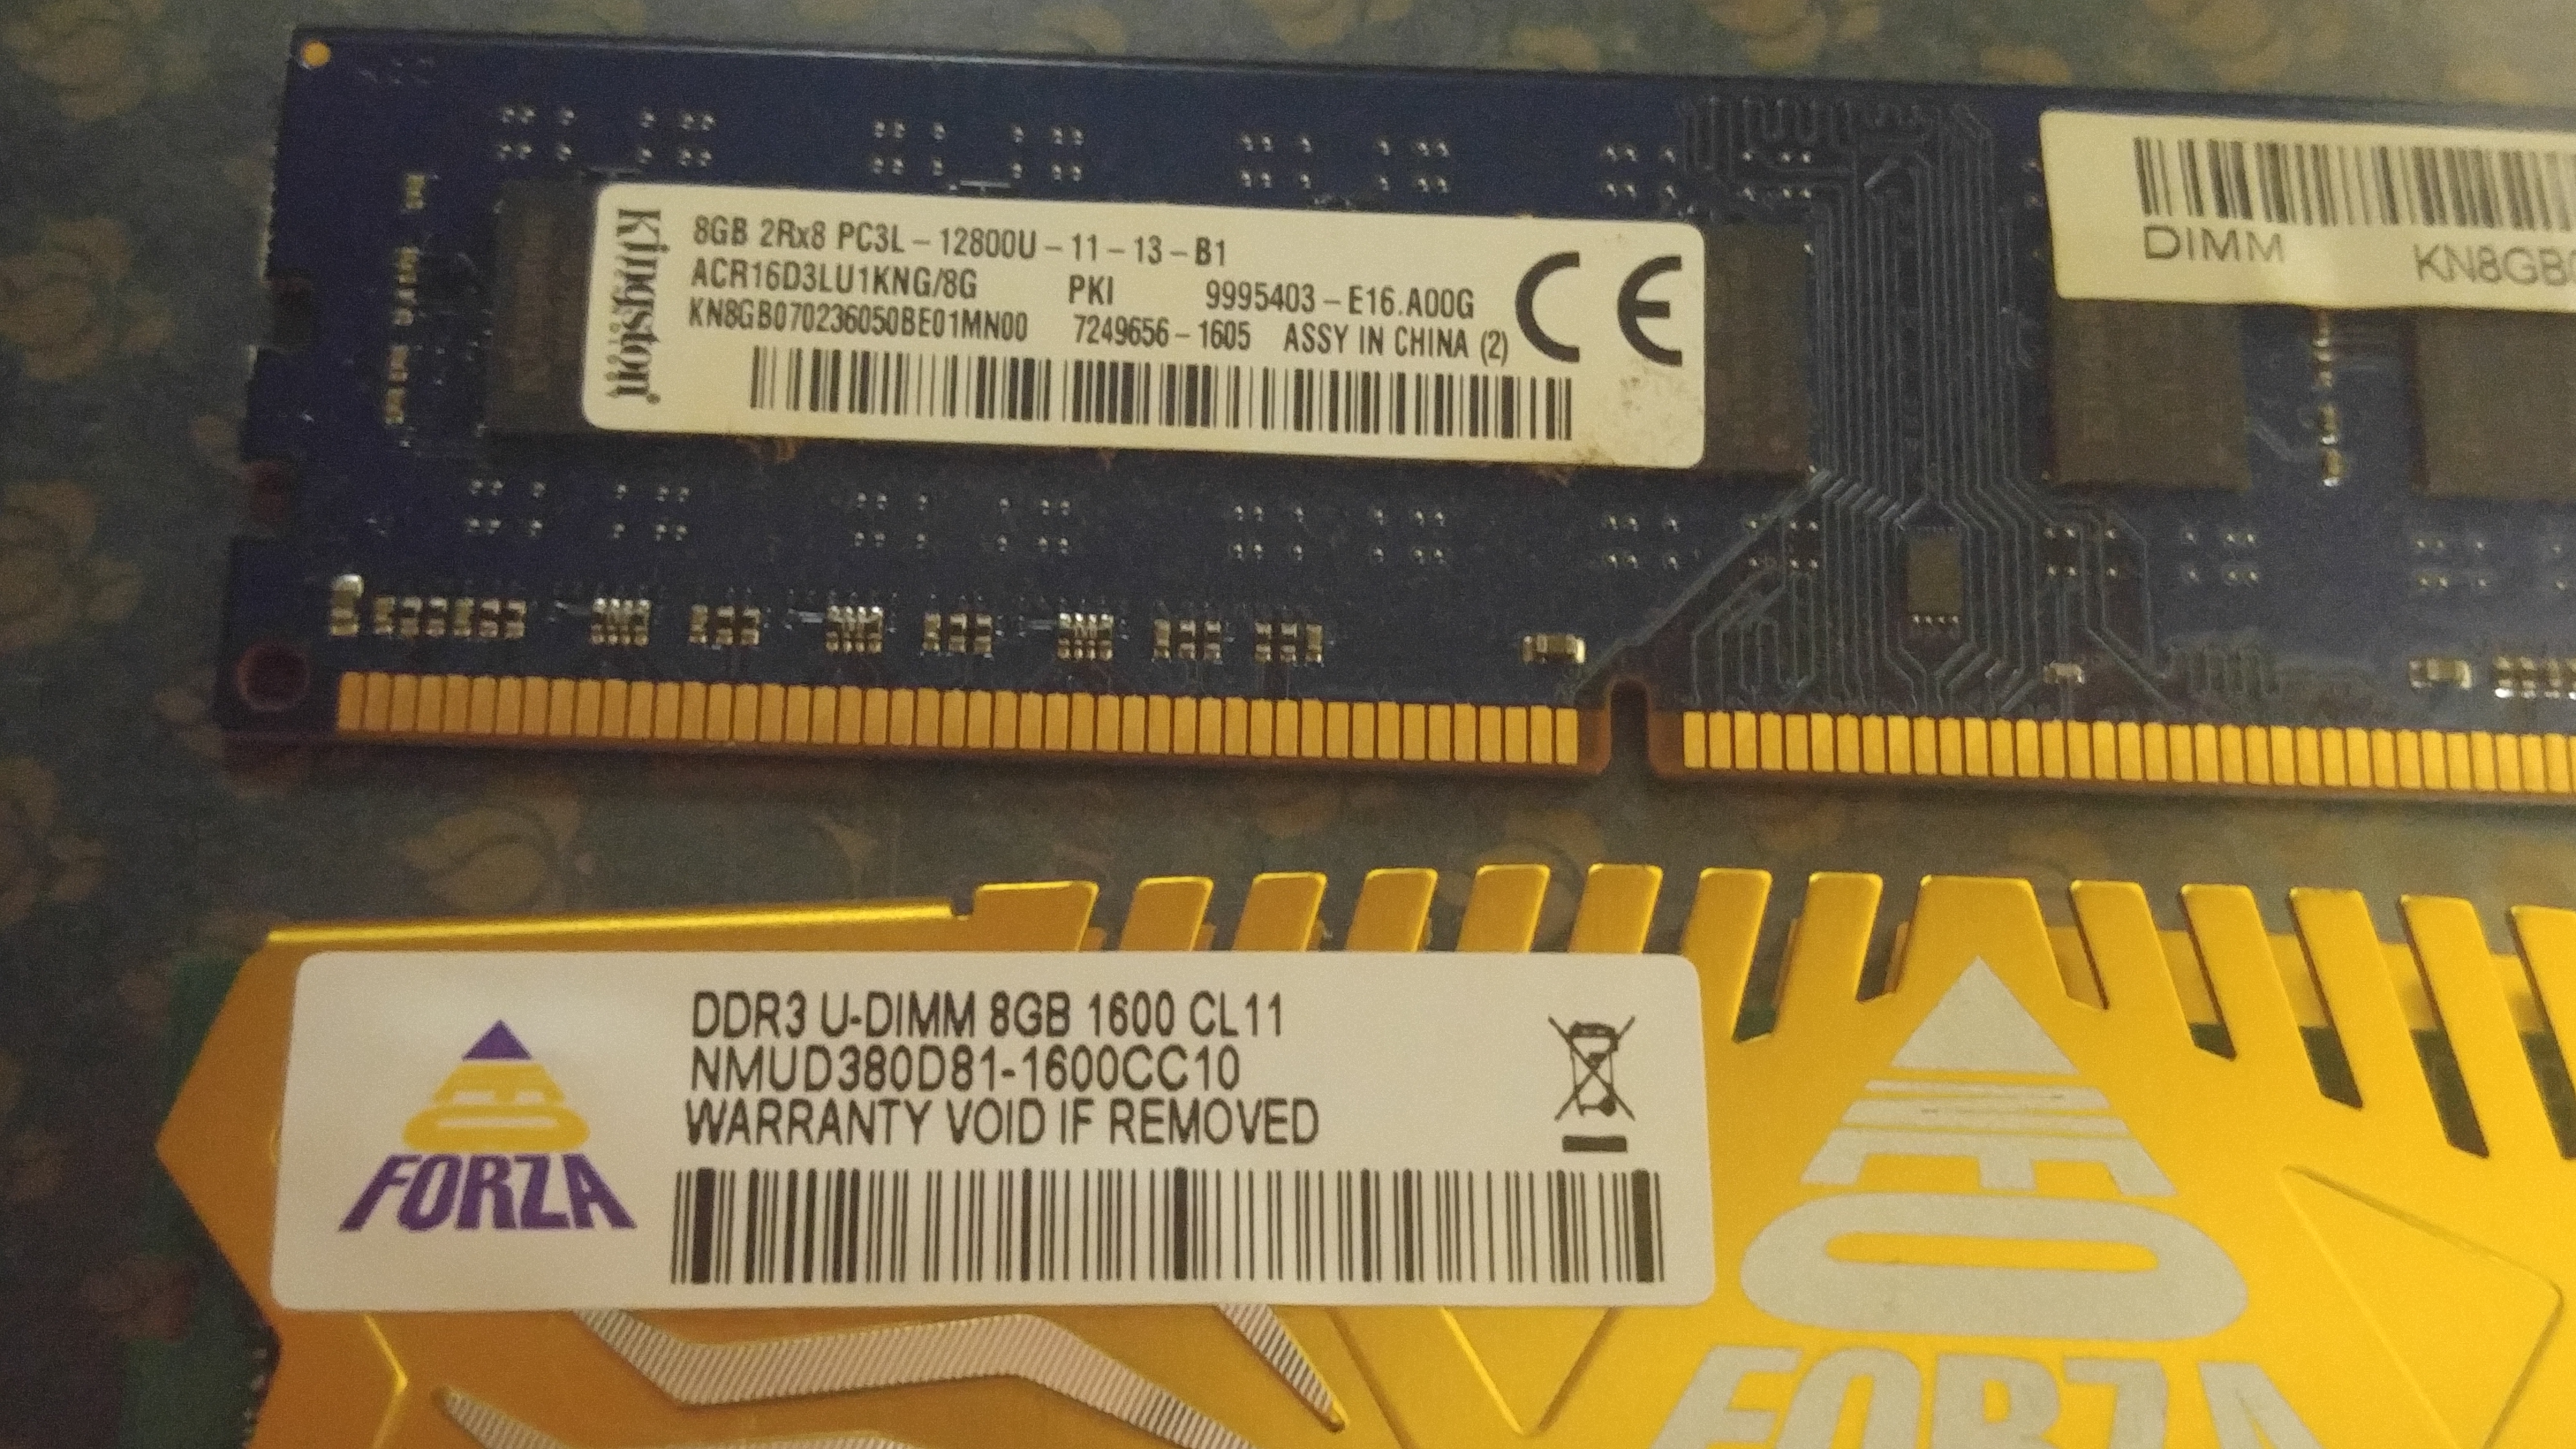 DDR2-3200 - Non-ECC OFFTEK 512MB Replacement RAM Memory for Gateway 9310S Desktop Memory